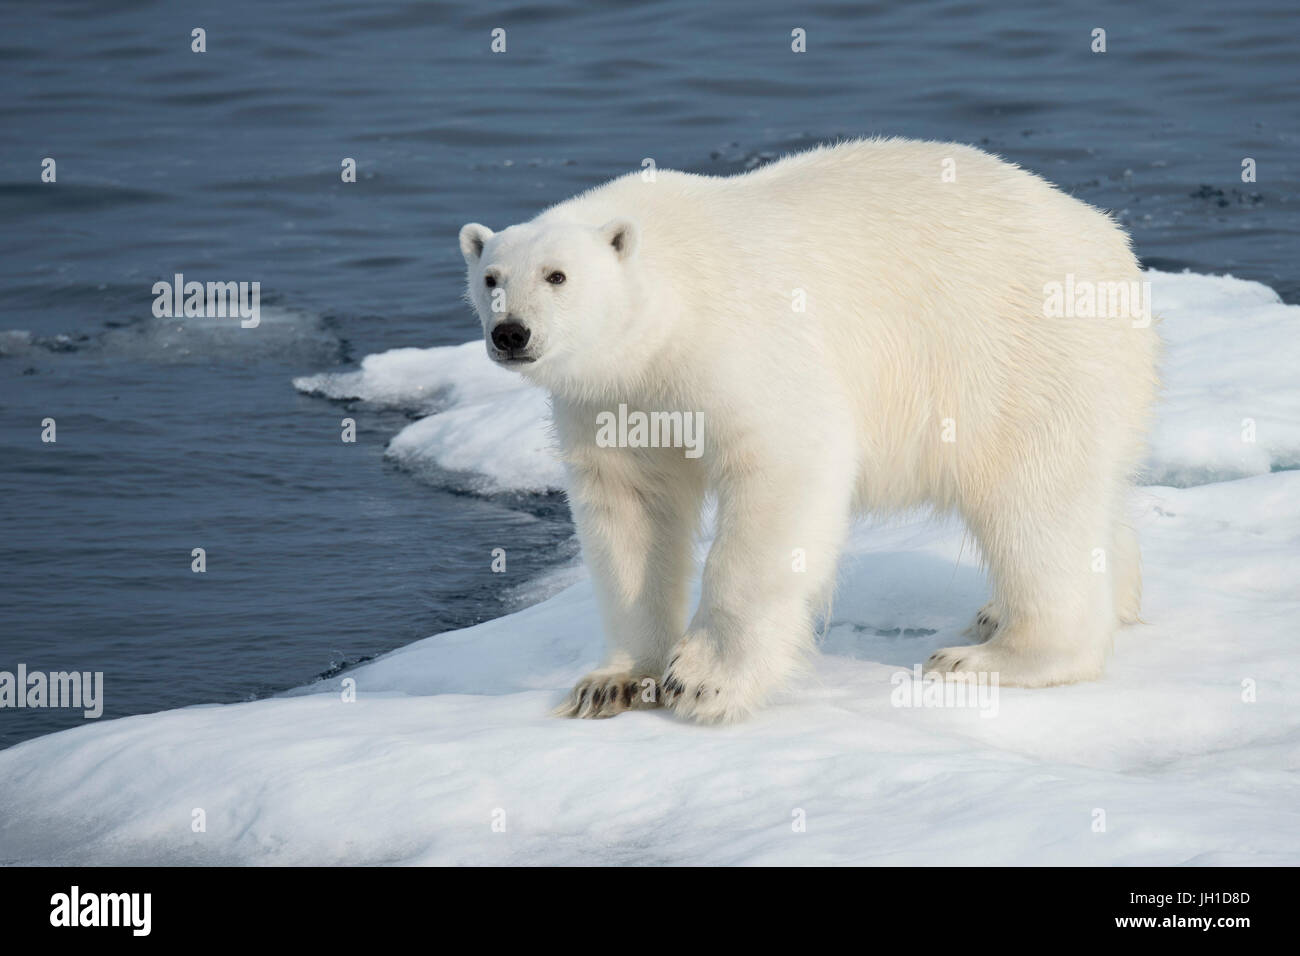 Homme Ours blanc, Ursus maritimus, sur un iceberg, l'île de Baffin, de l'Arctique canadien Banque D'Images